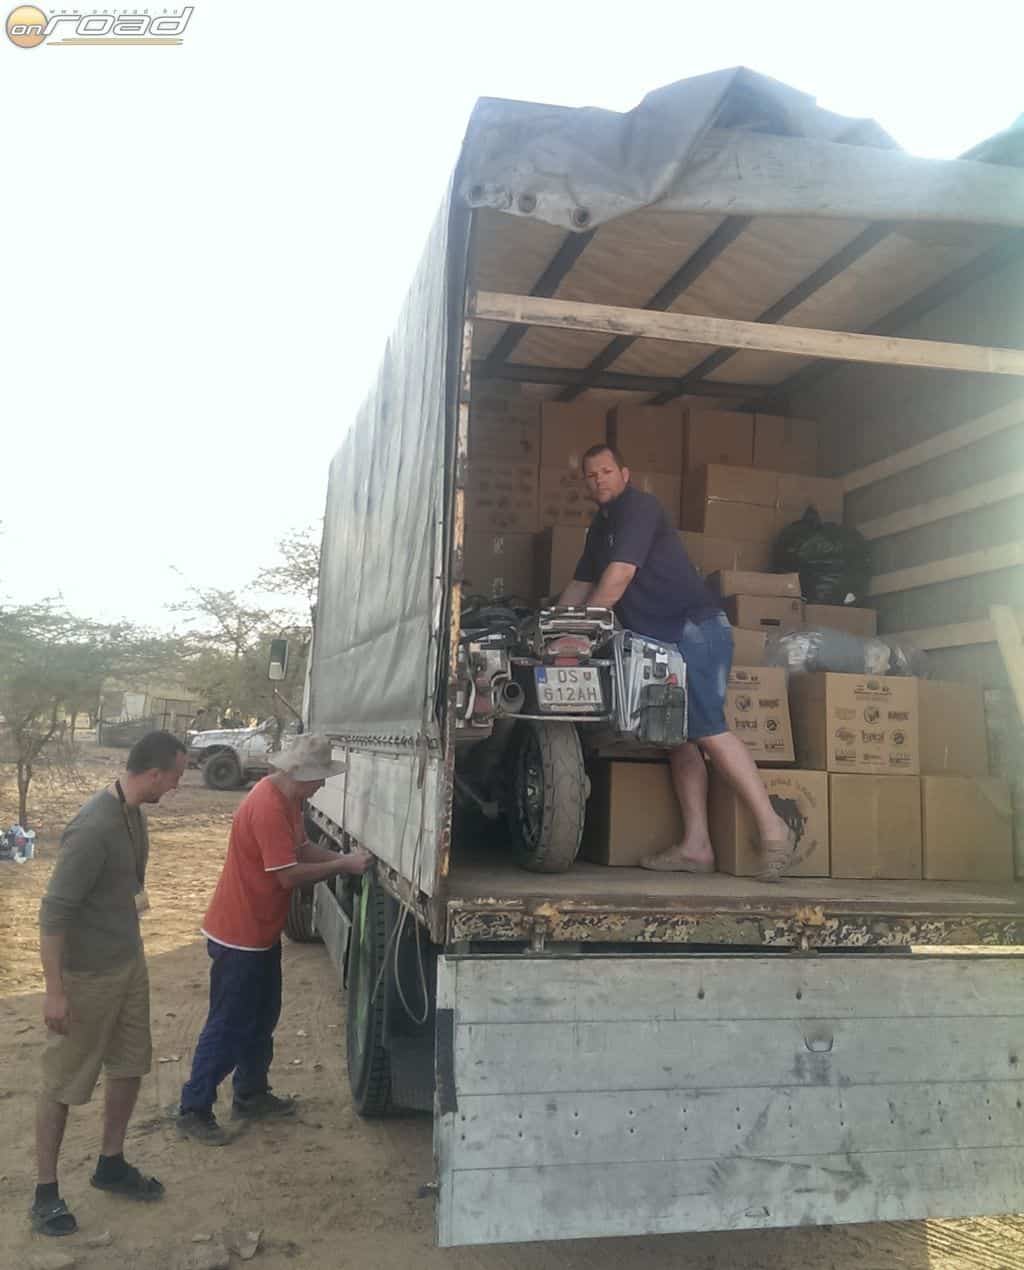 A motor az egyik adományos teherautóban utazott tovább Bamako felé